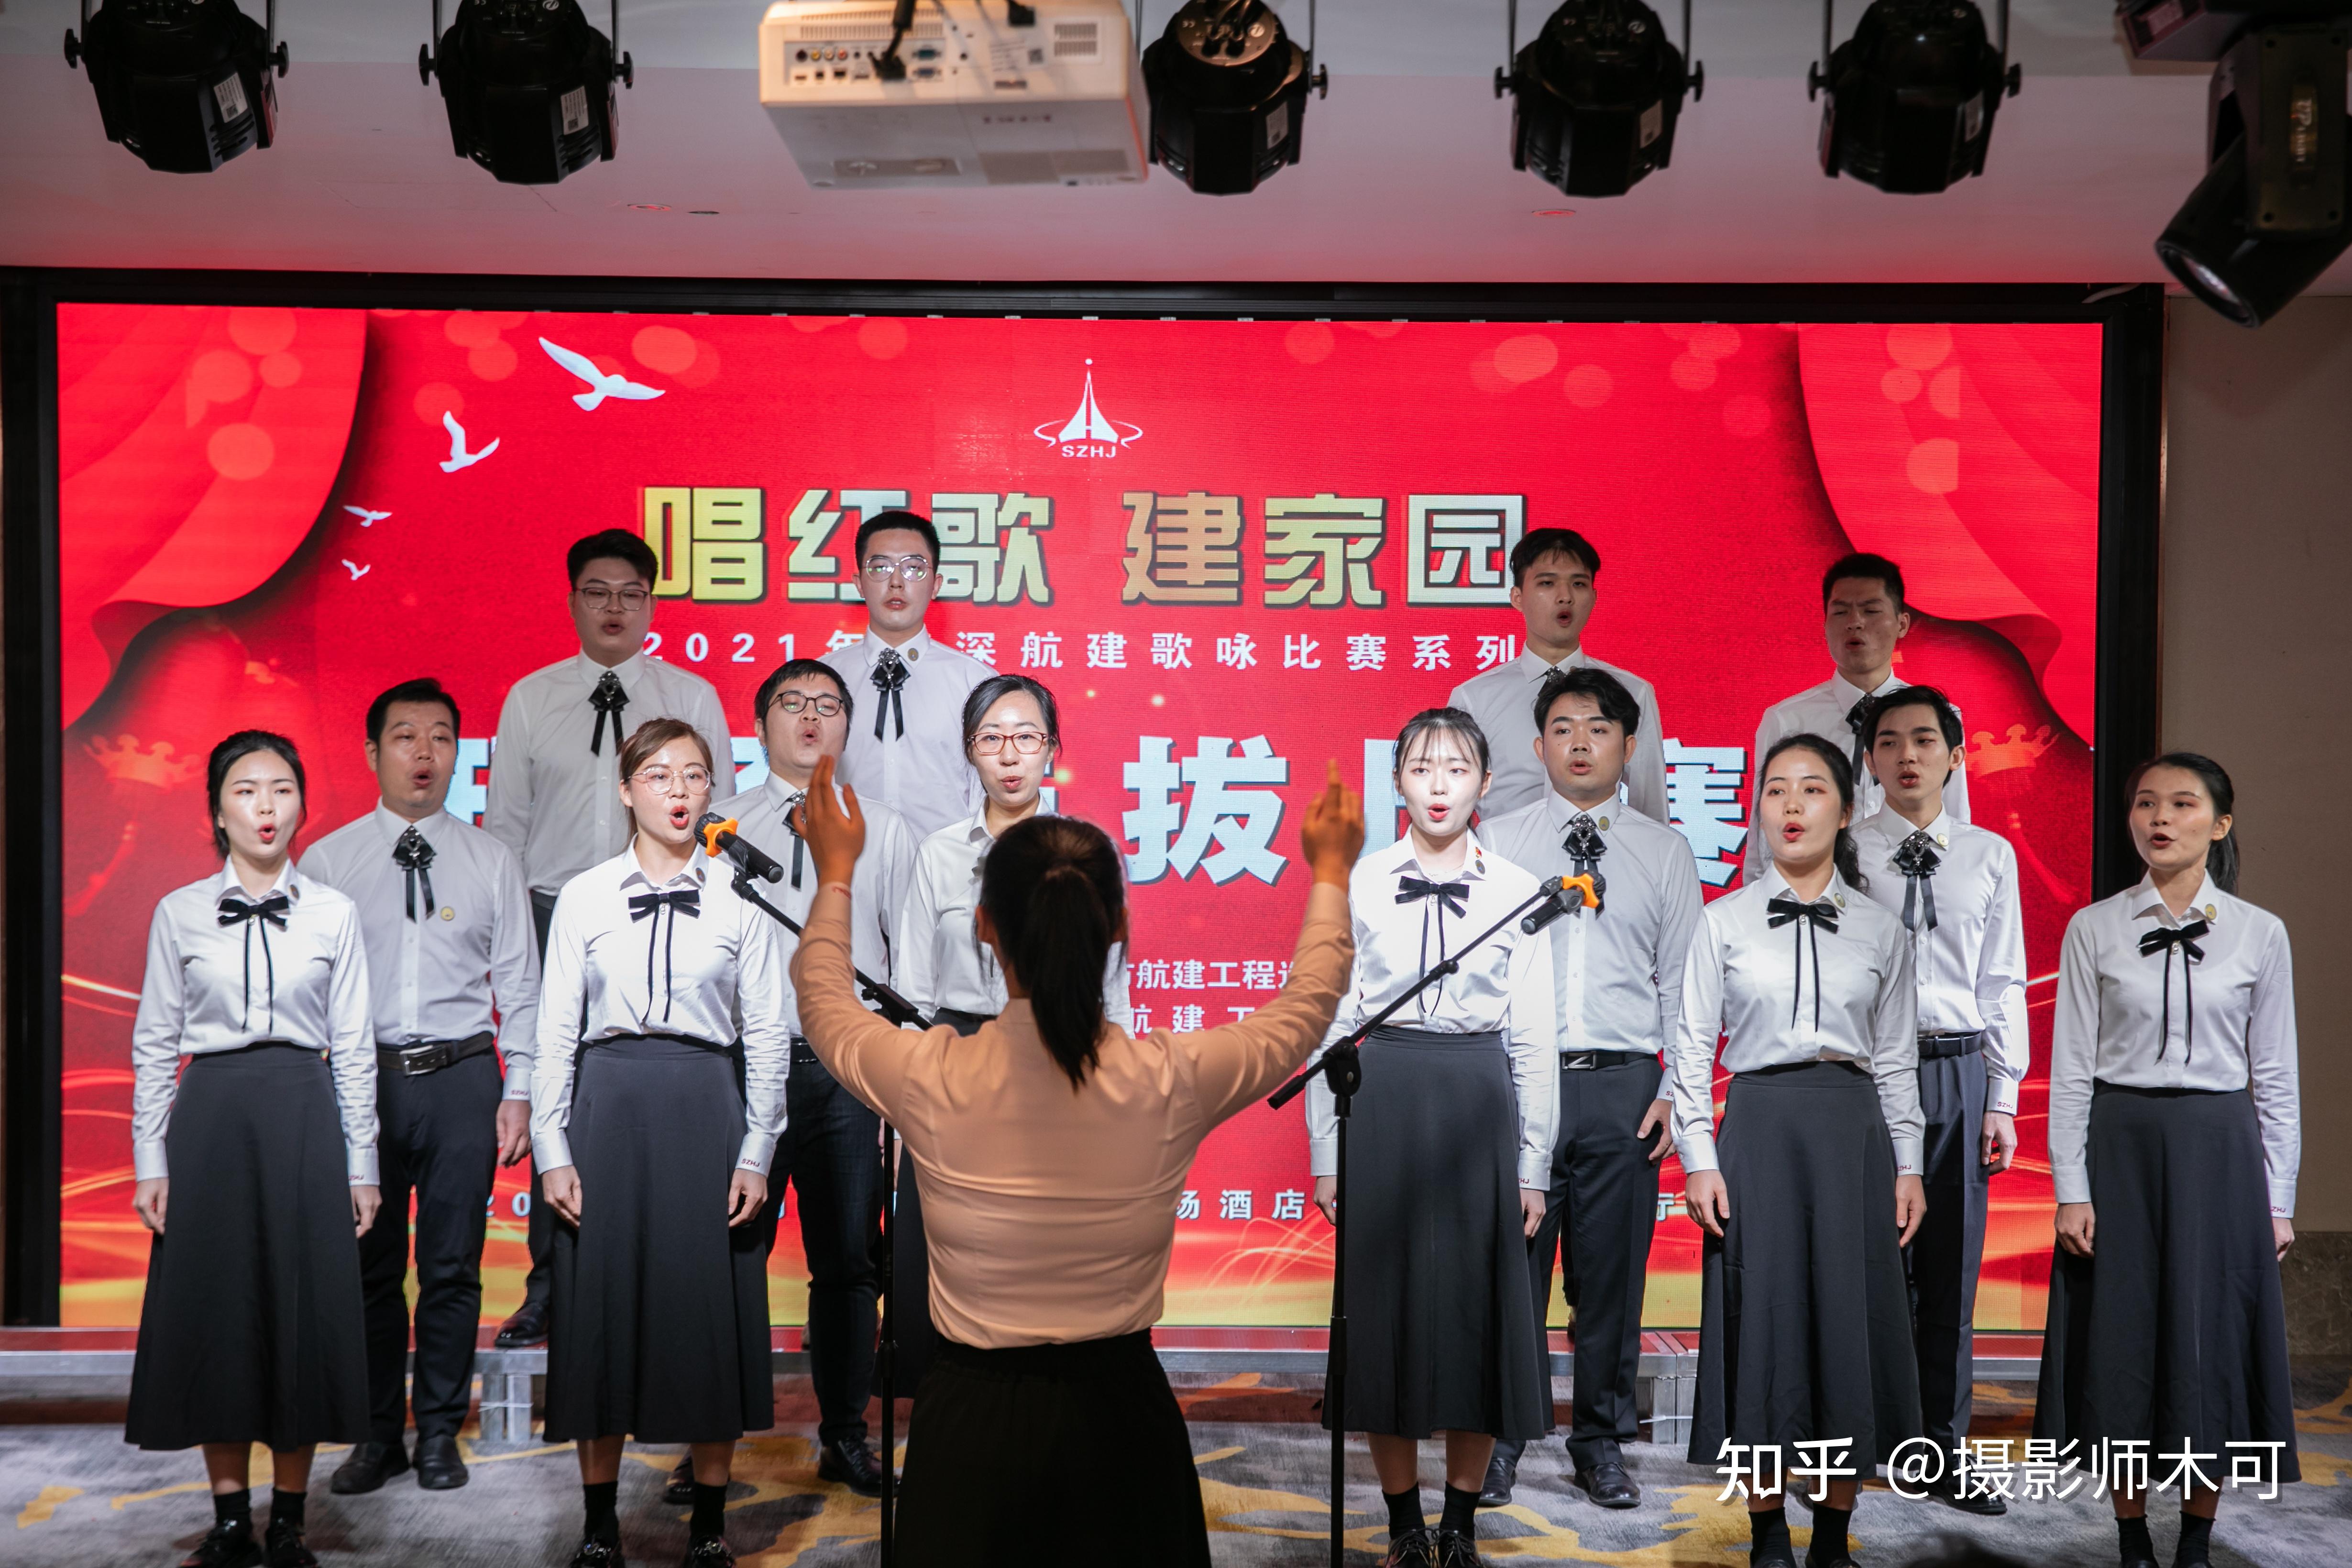 年轻女子在家直播唱歌-蓝牛仔影像-中国原创广告影像素材